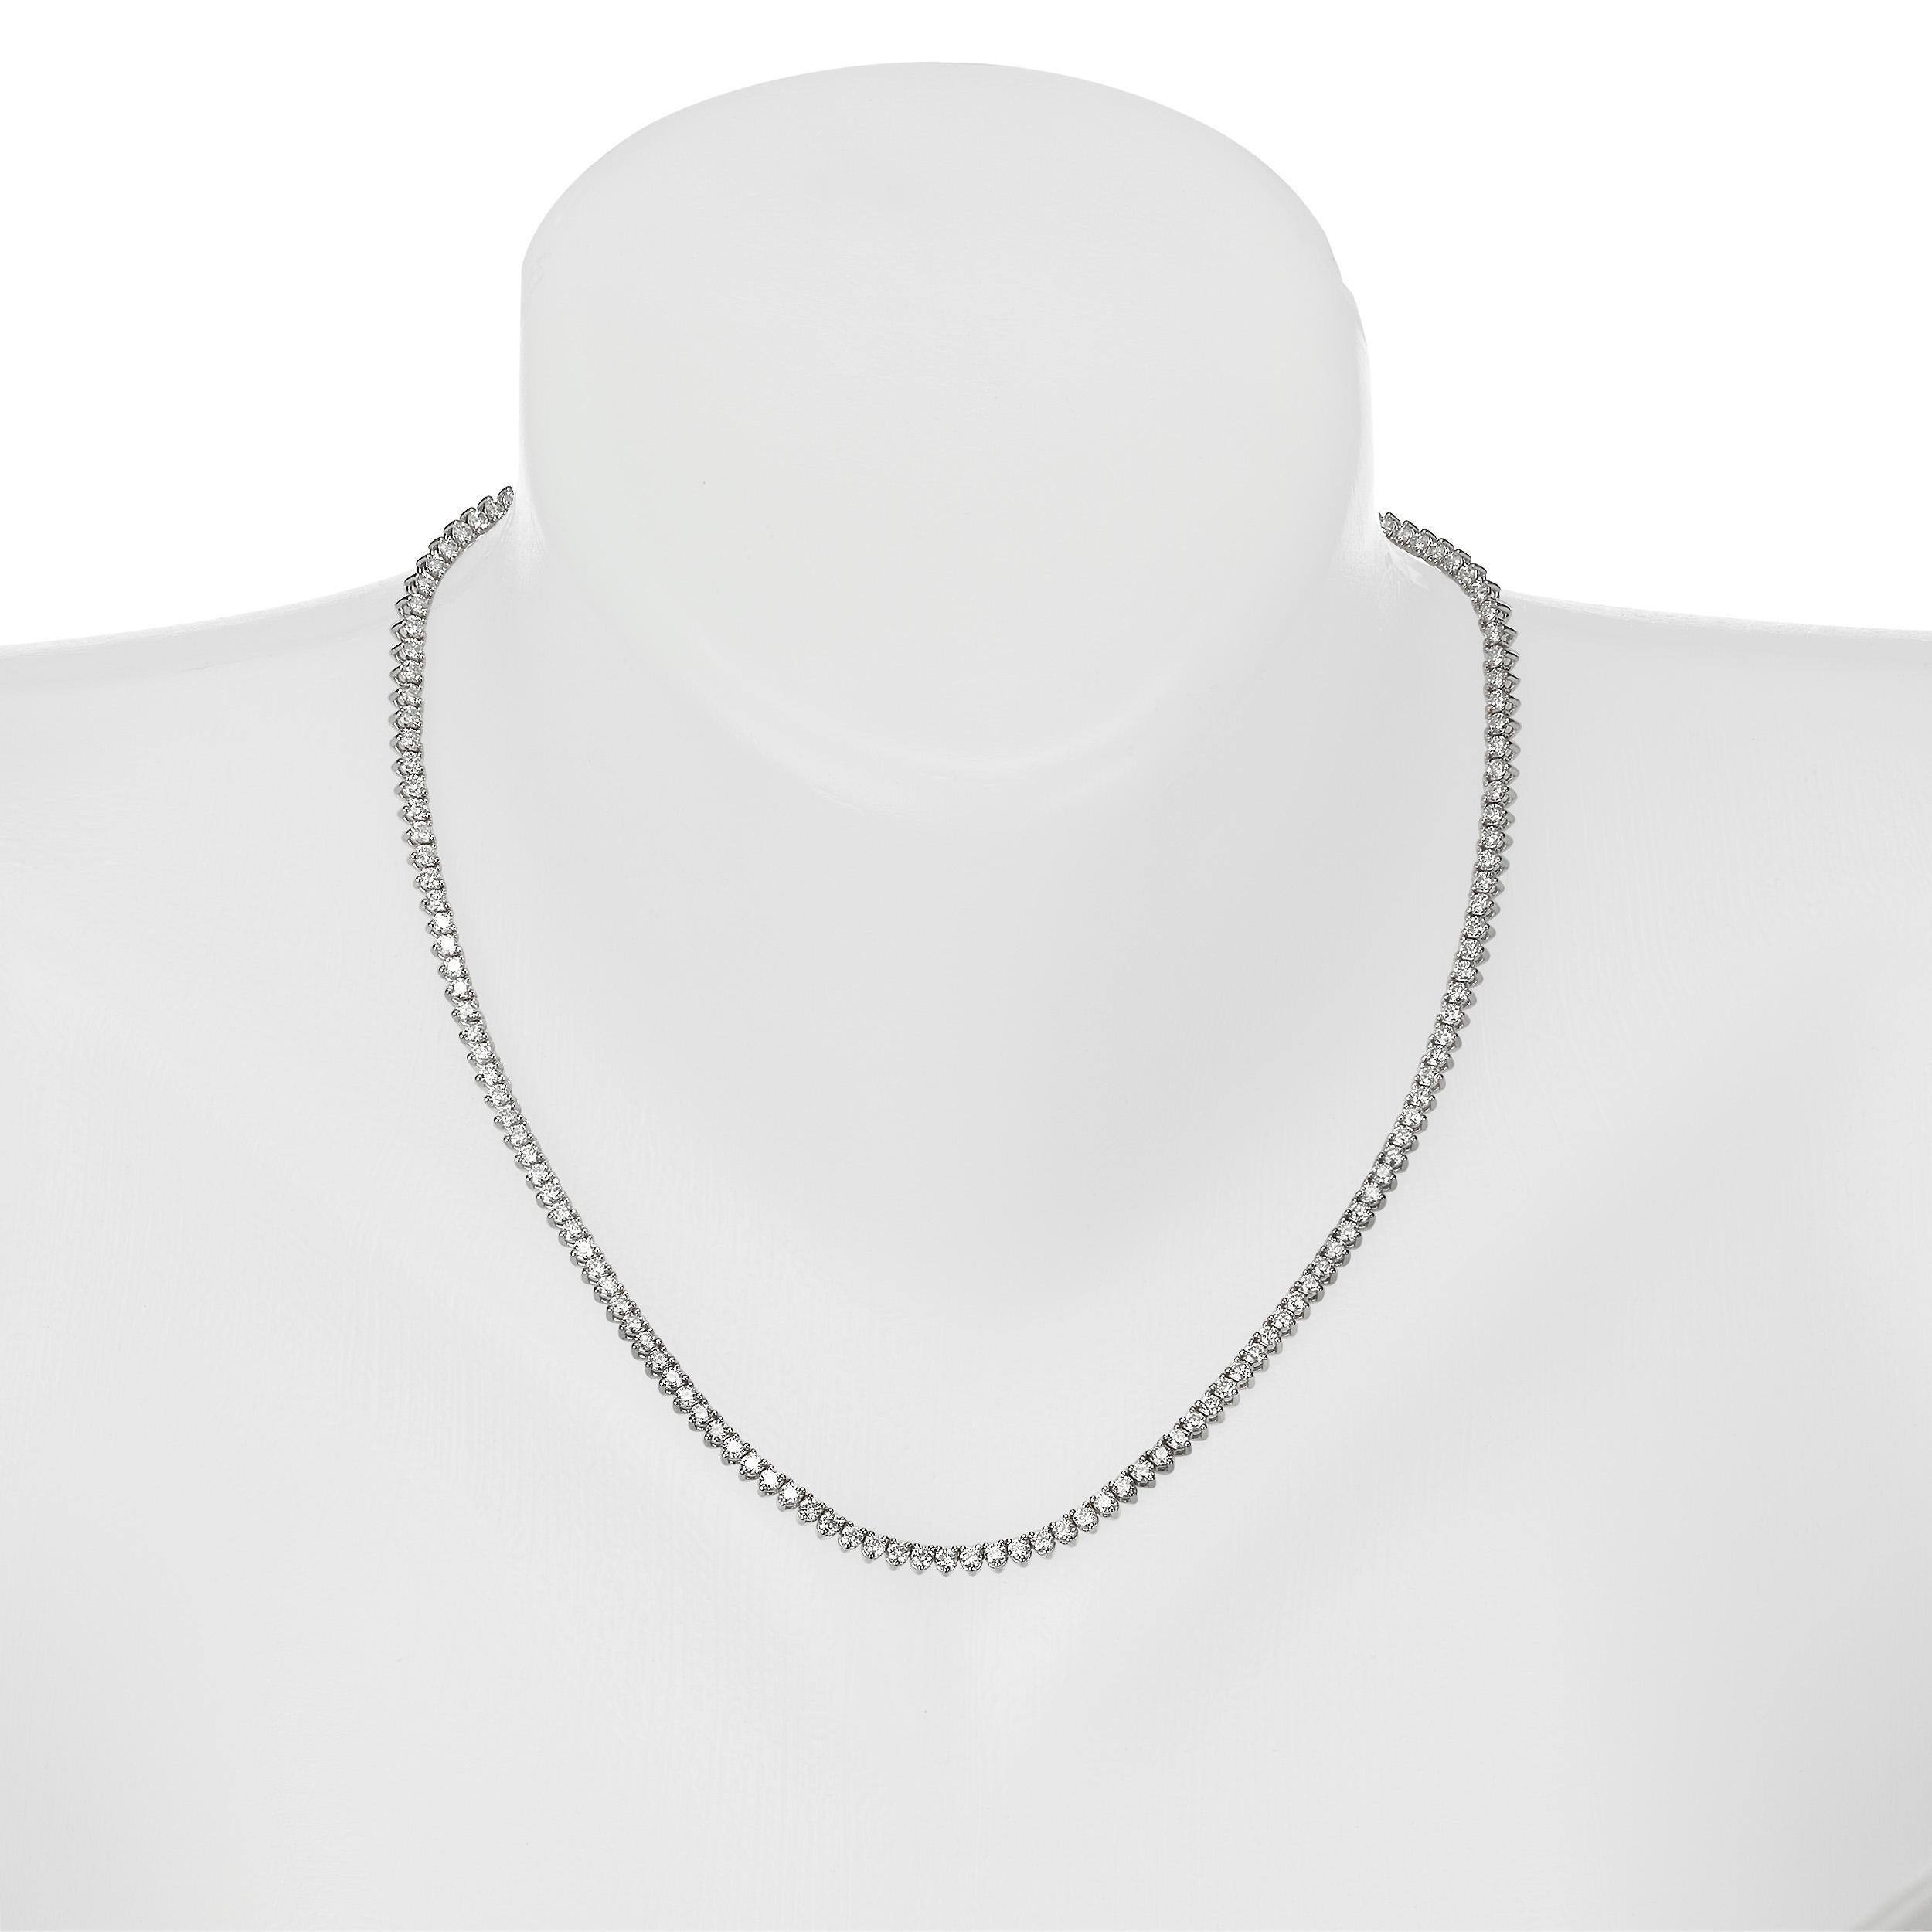 
Hochwertige Diamanten im Rundschliff mit einem Gesamtgewicht von 7,93 Karat werden mit präziser Handwerkskunst zu einer klassischen, zeitlosen Halskette gefasst. Die Diamanten sind auf 14K Weißgold montiert 
Jewell Details: 
7,93 Karat